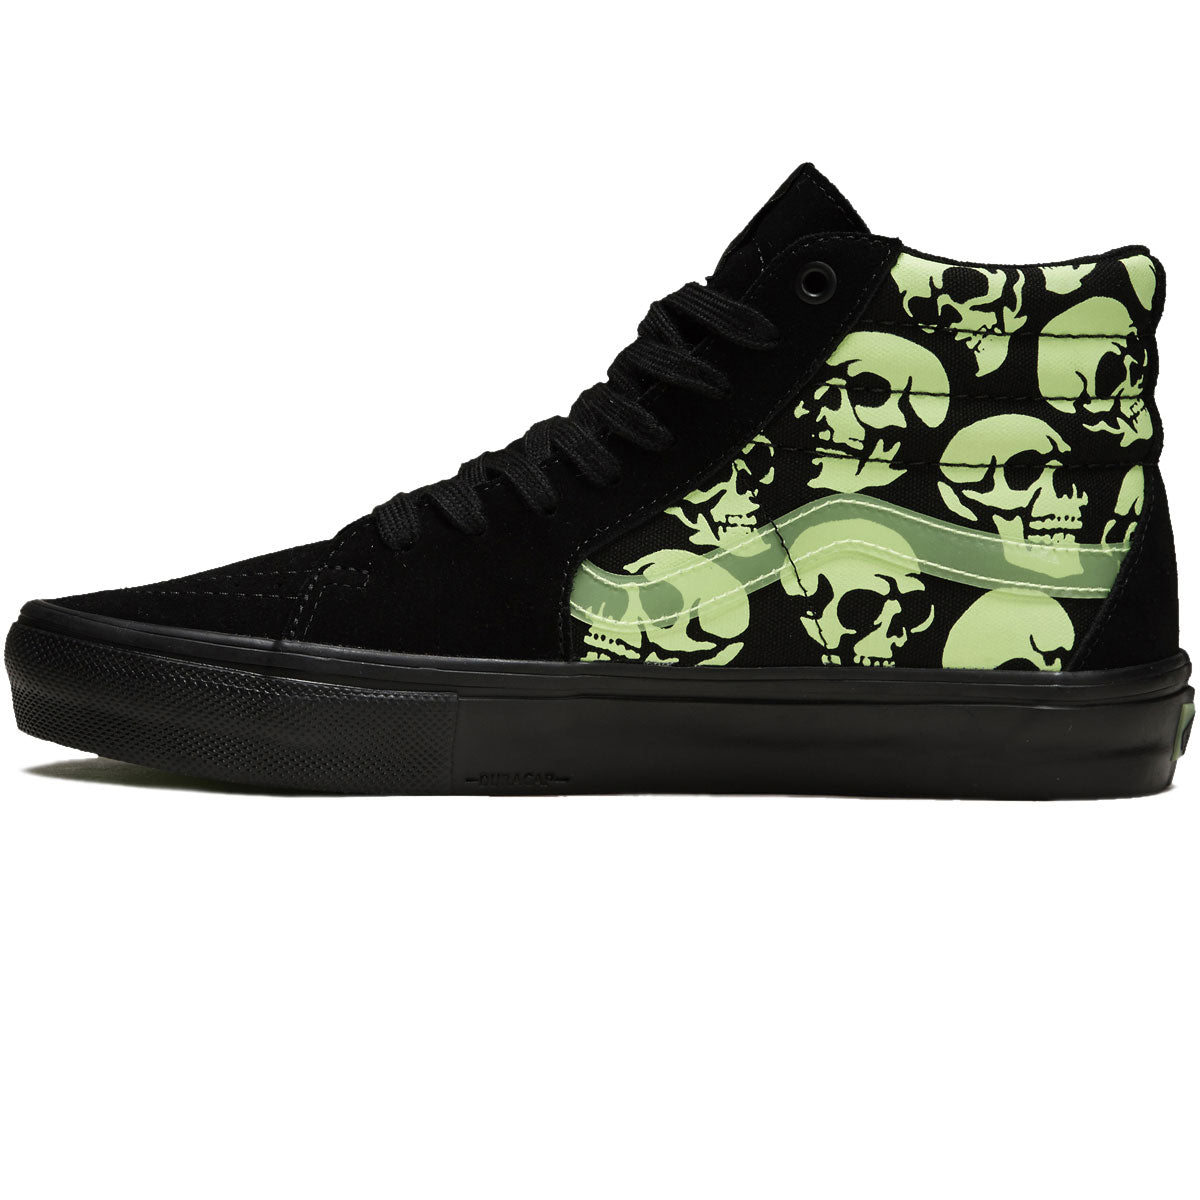 Vans Skate Sk8-hi Shoes - Glow Skulls Black/Green/Black image 2